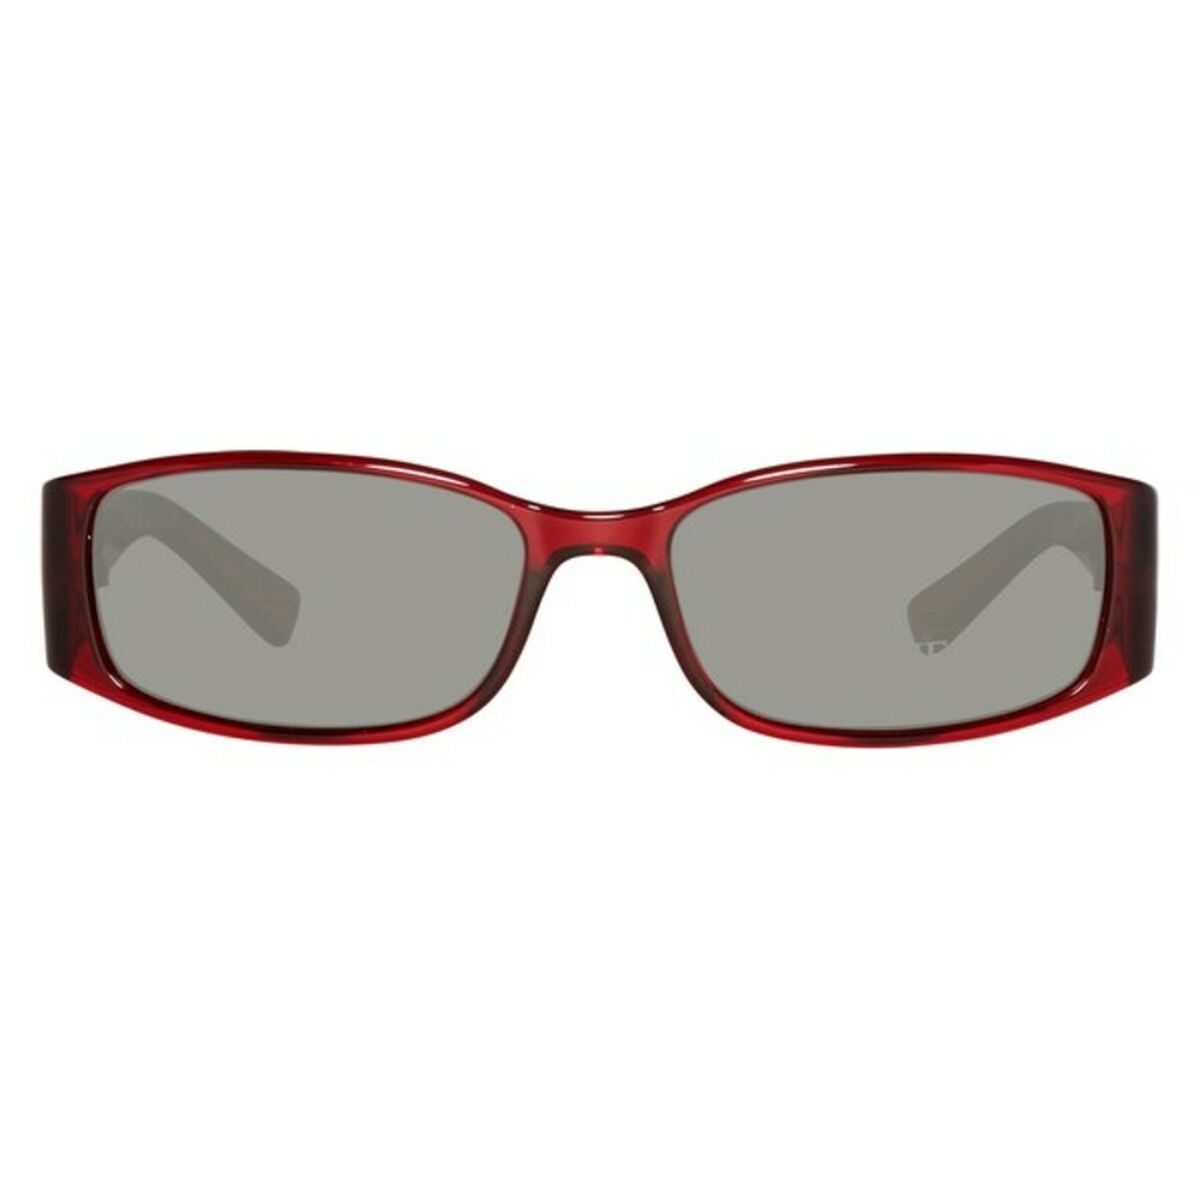 Kaufe Damensonnenbrille Guess GU 7259 F63 -55 -16 -0 bei AWK Flagship um € 53.00